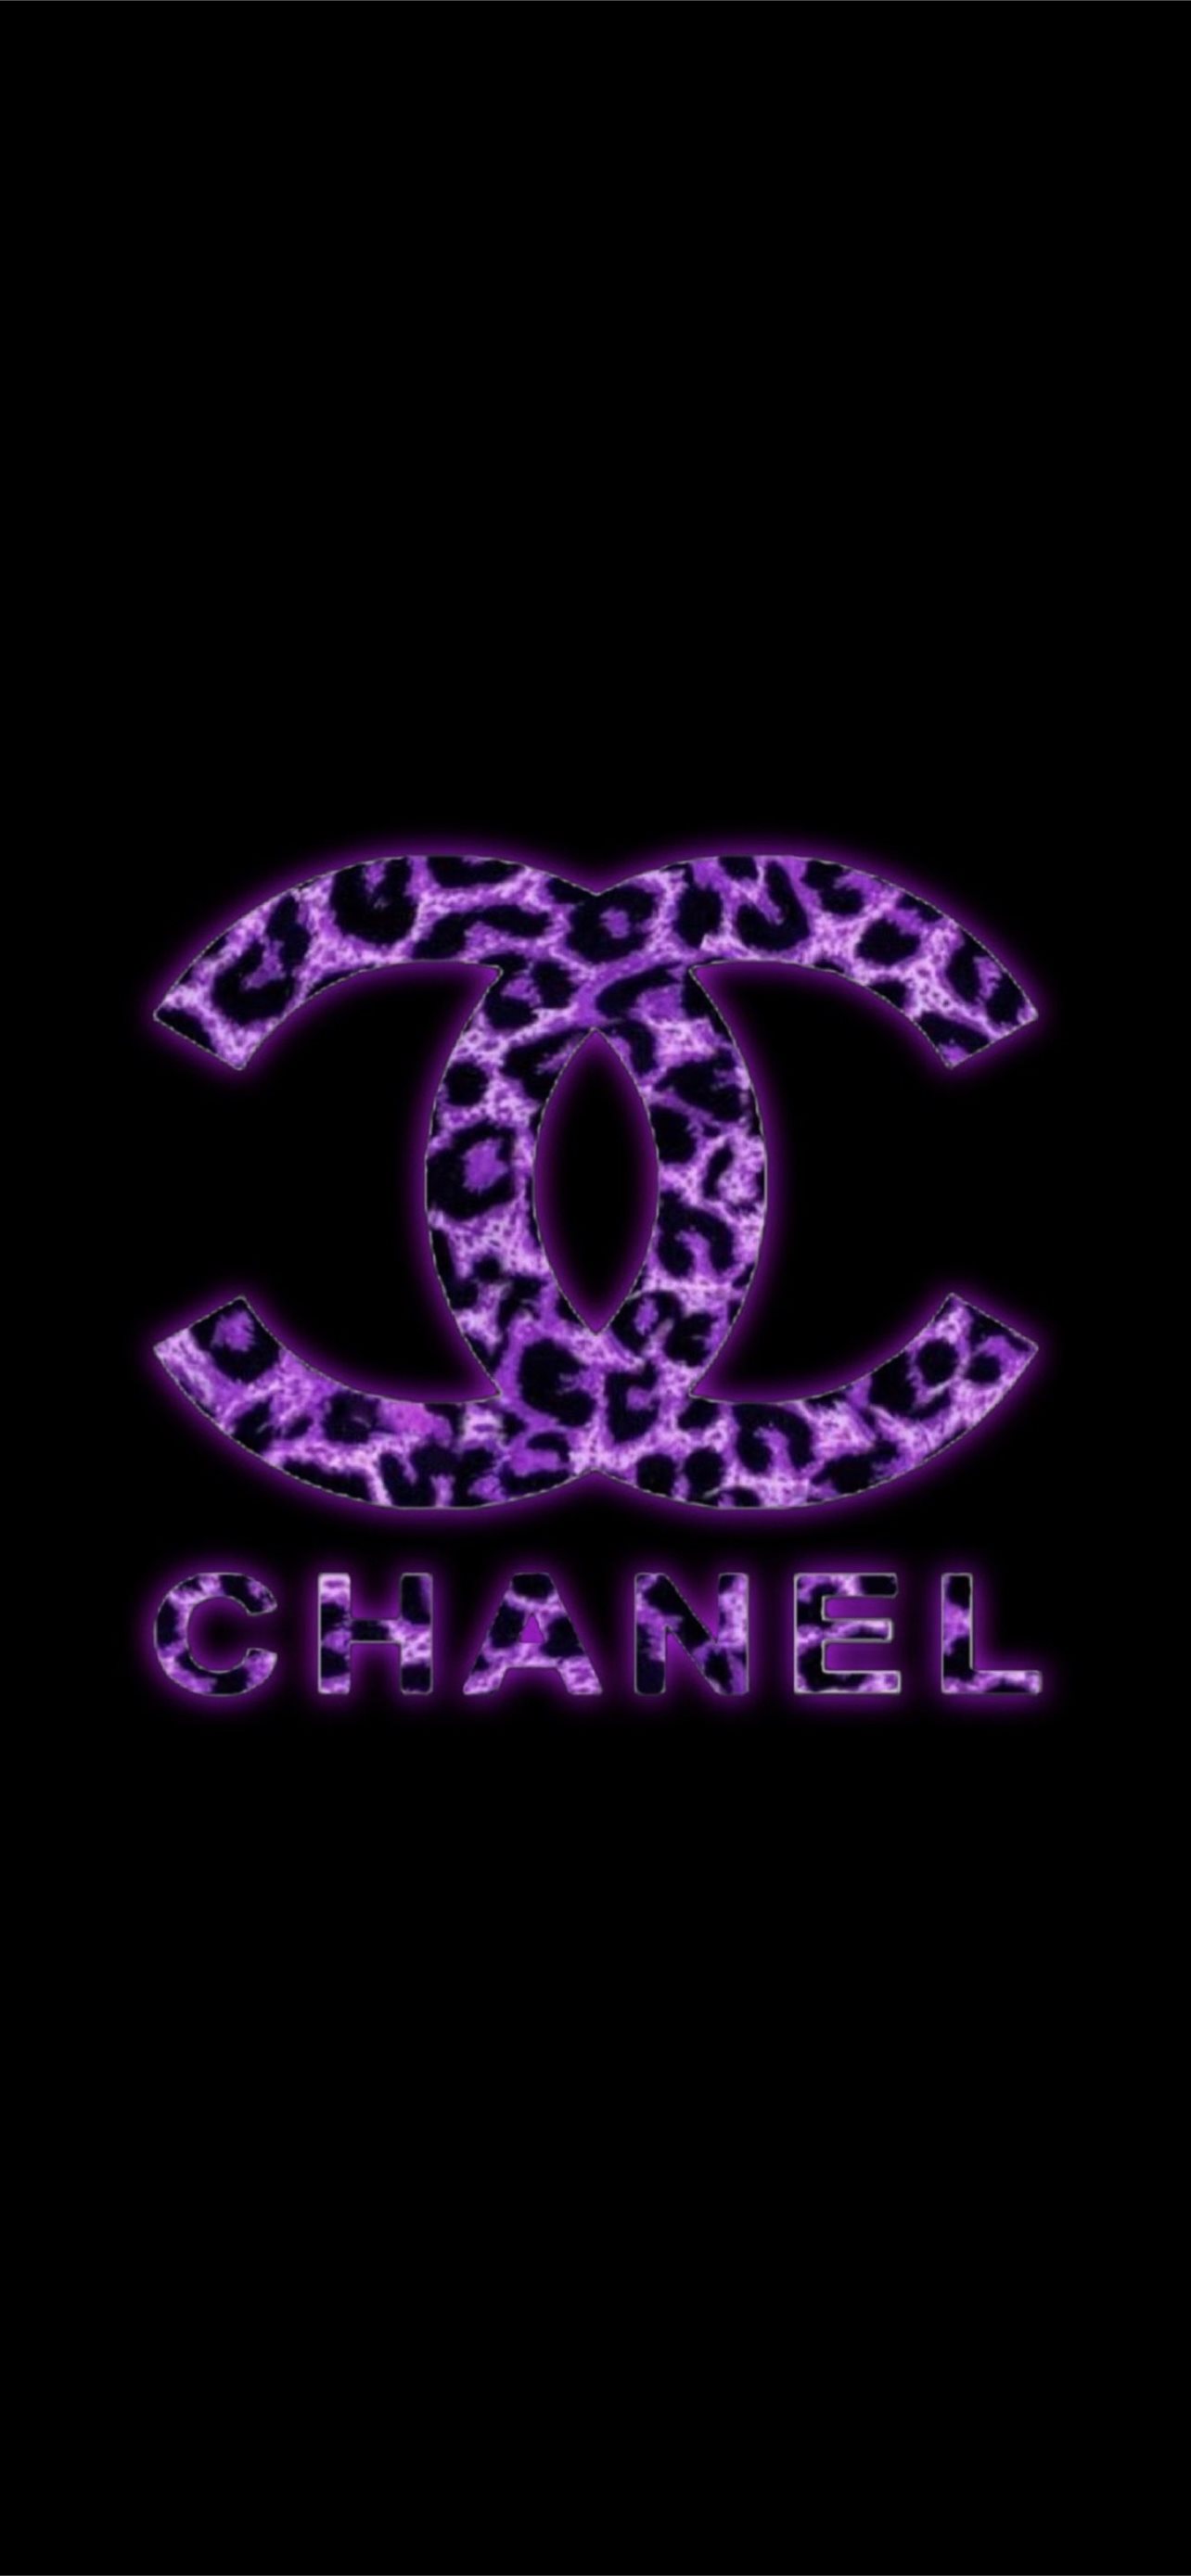 Nền Chất Liệu Khung đèn Chanel Hình Chụp Và Hình ảnh Để Tải Về Miễn Phí -  Pngtree